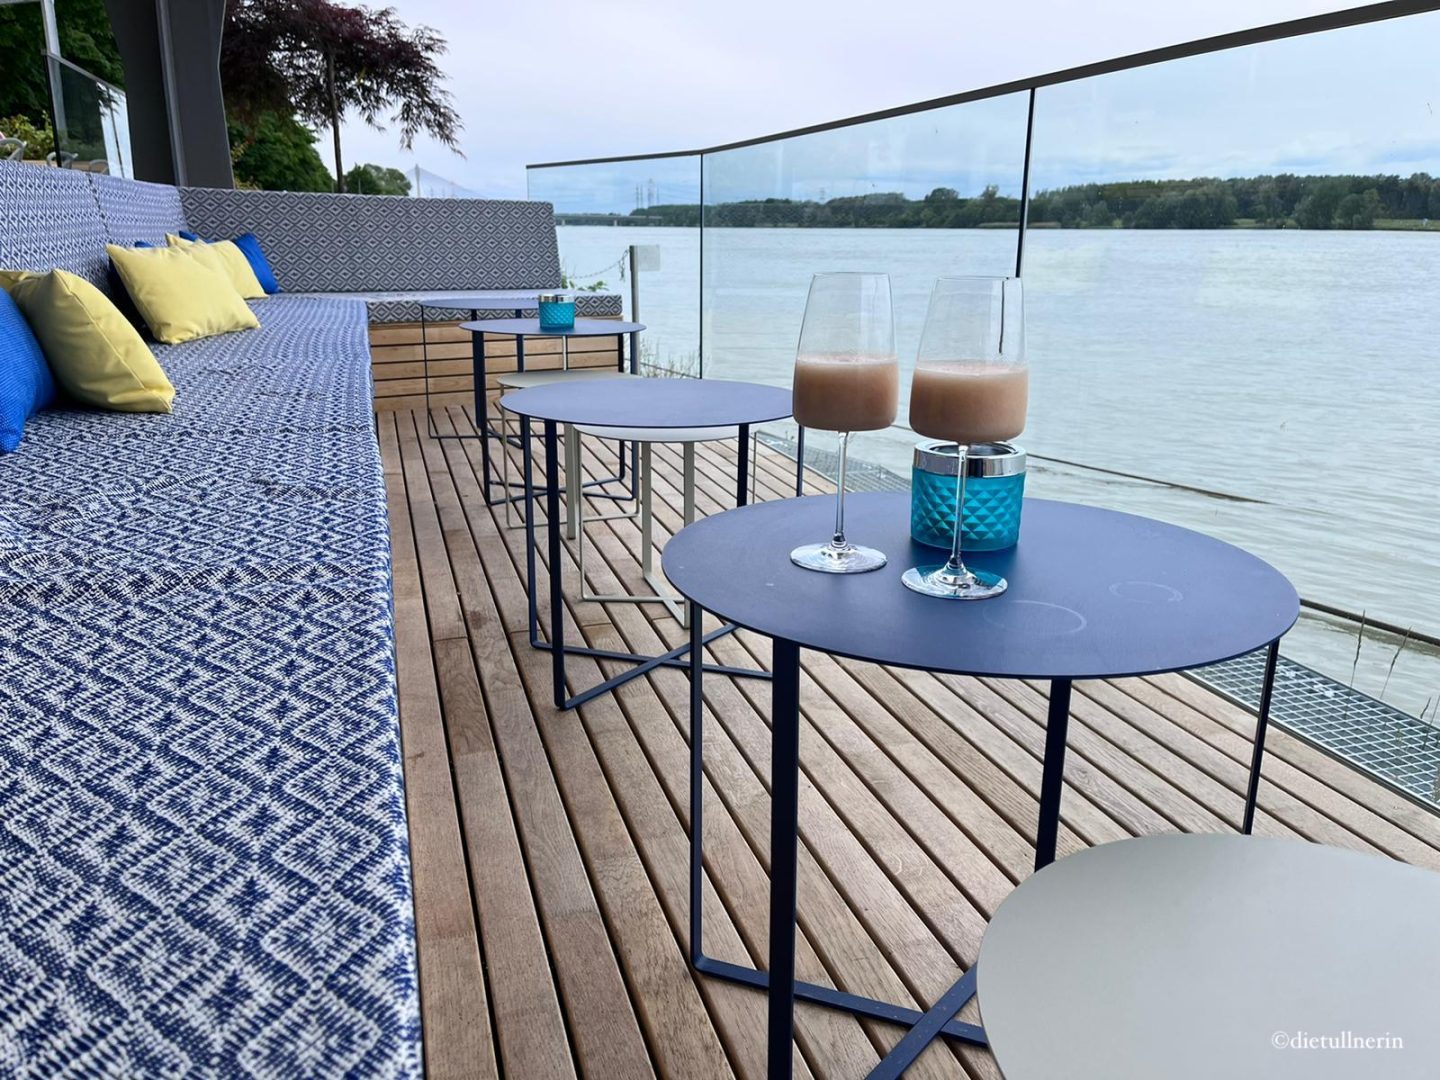 Terrasse des Restaurants Süddeck in Tulln mit blau-weiß-gemusterten Sitzauflagen, runden Metalltischen und edlem Boden in Holzstyle. Direkt am Ufer der Donau.